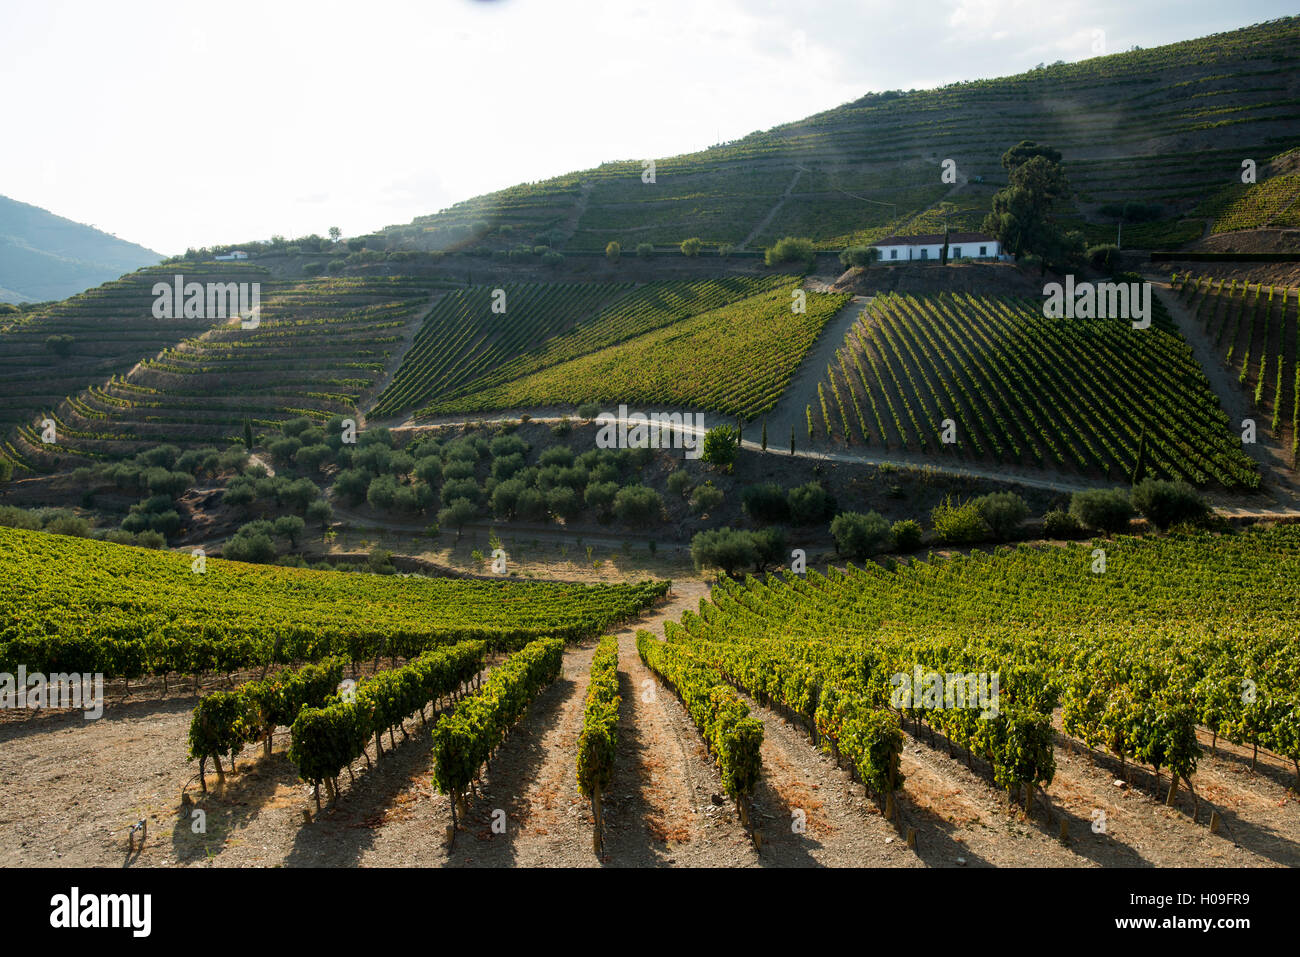 La maturation de la vigne au soleil dans un vignoble dans la région du Haut-Douro, Portugal, Europe Banque D'Images